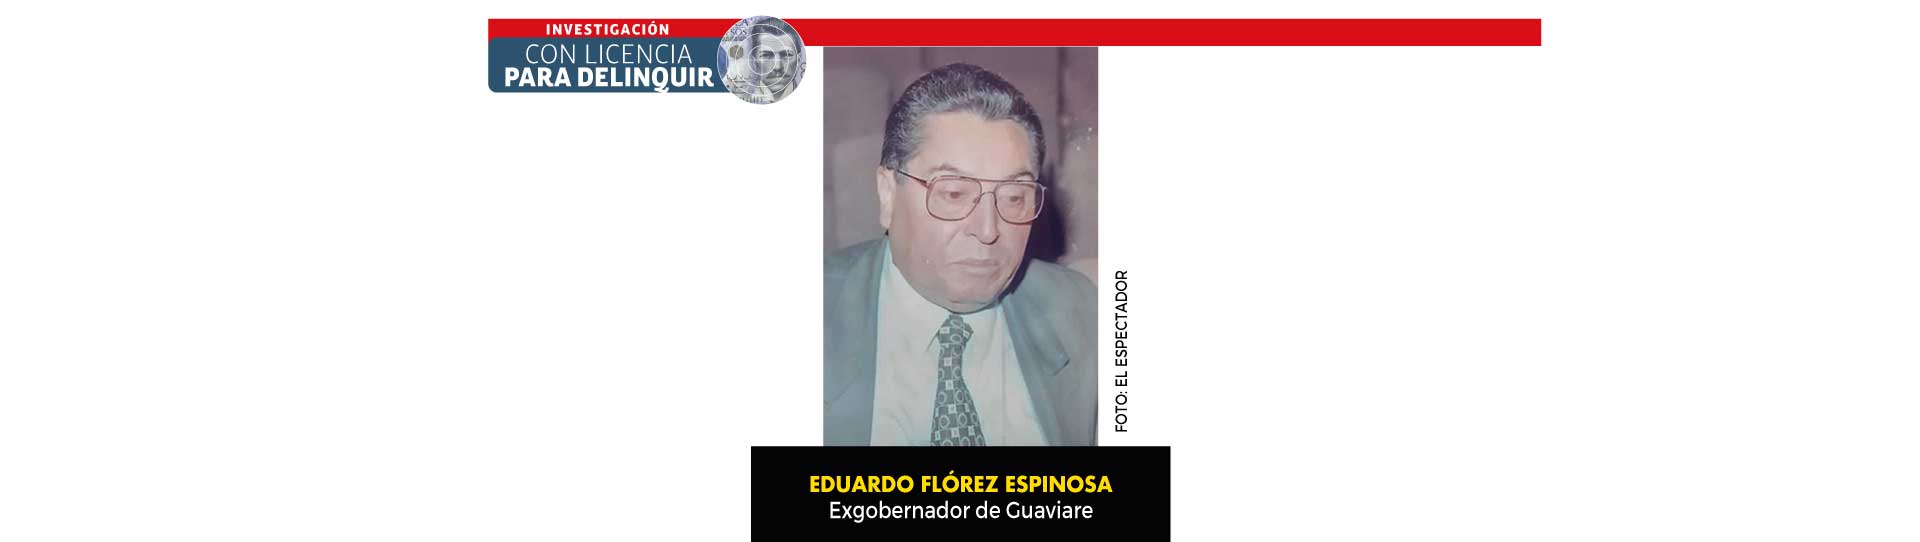 Con licencia para delinquir | Corrupción en Guaviare: cuatro gobernadores condenados